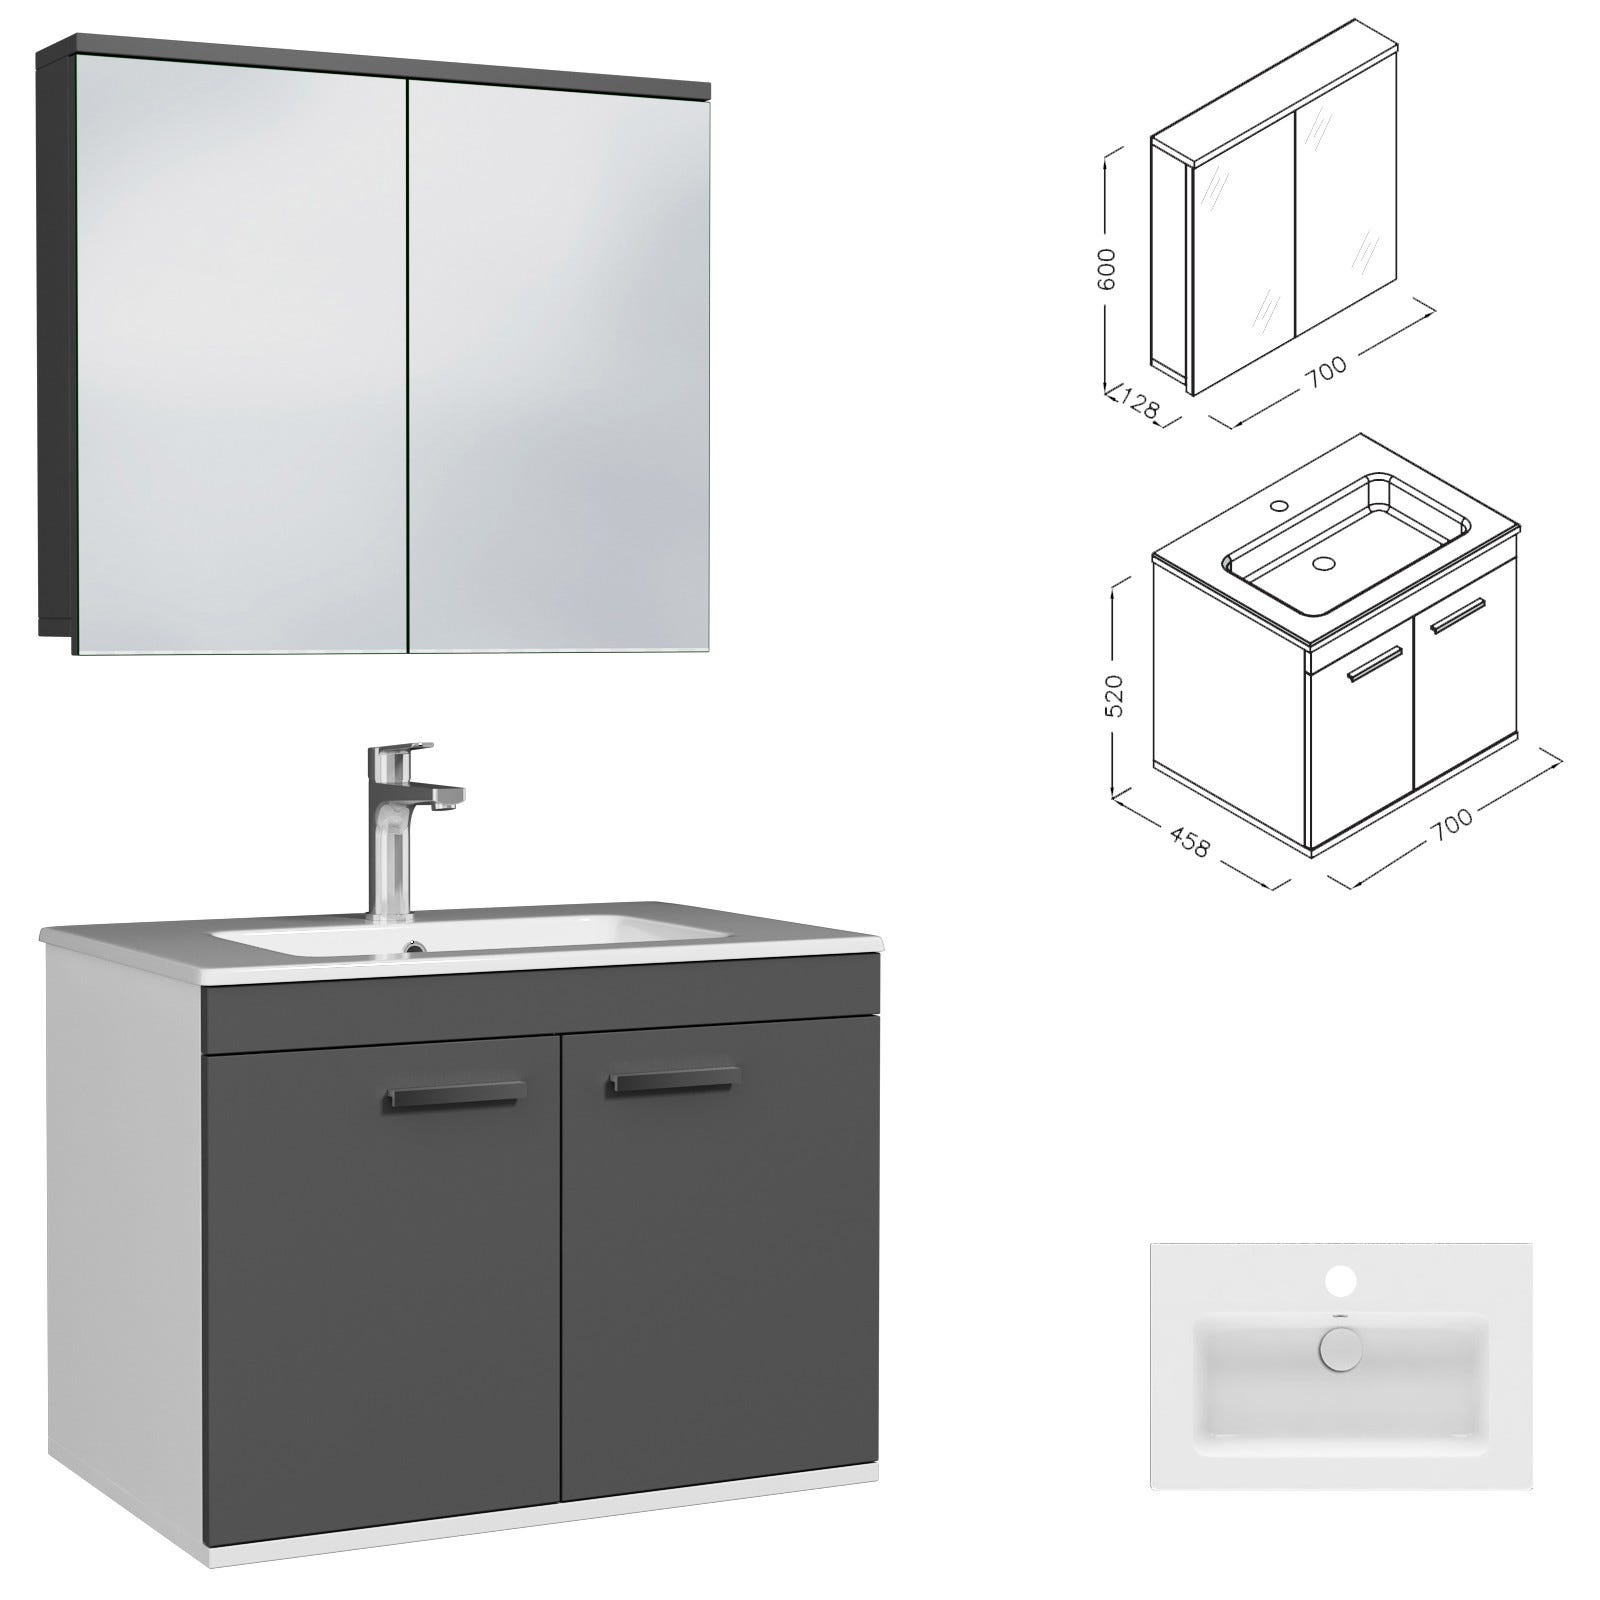 RUBITE Meuble salle de bain simple vasque 2 portes gris anthracite largeur 70 cm + miroir armoire 2